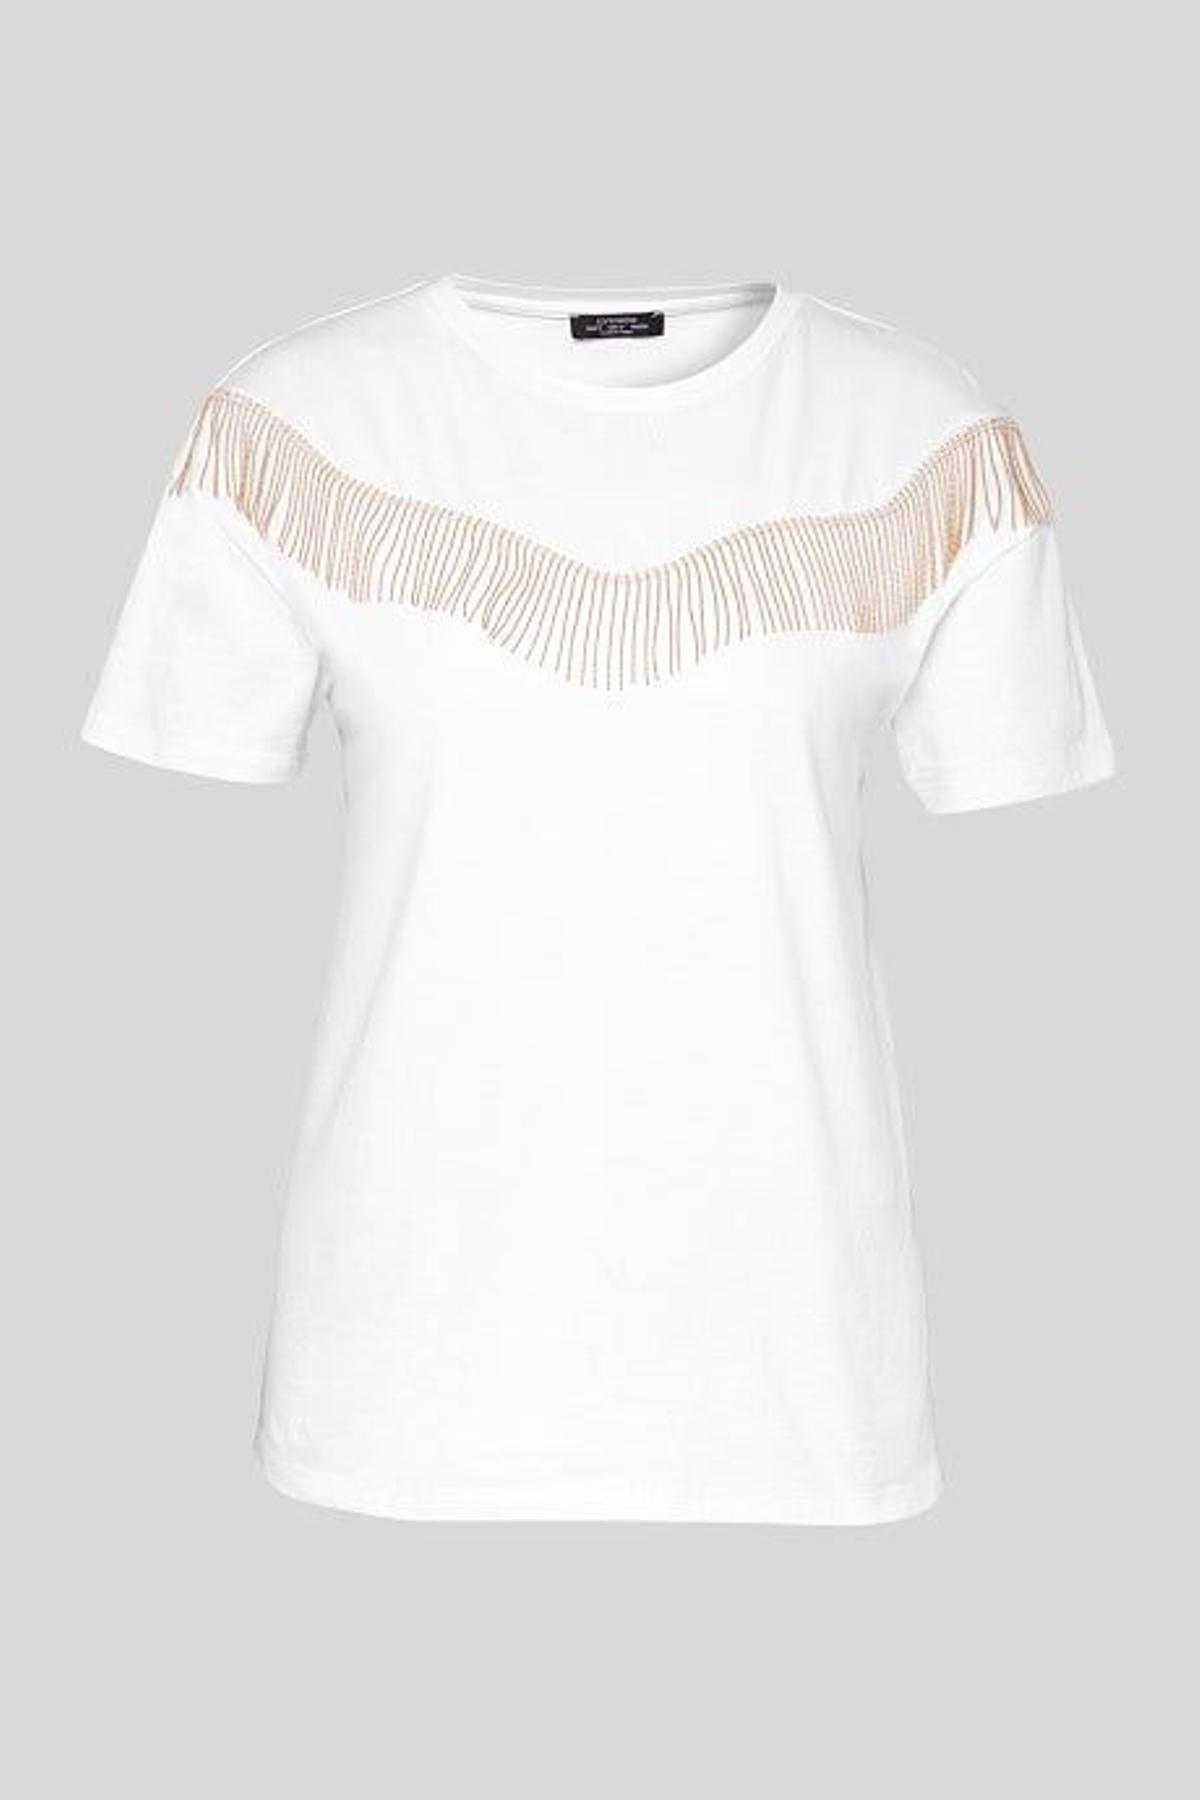 Camiseta blanca con flecos (Precio: 19,90 euros)